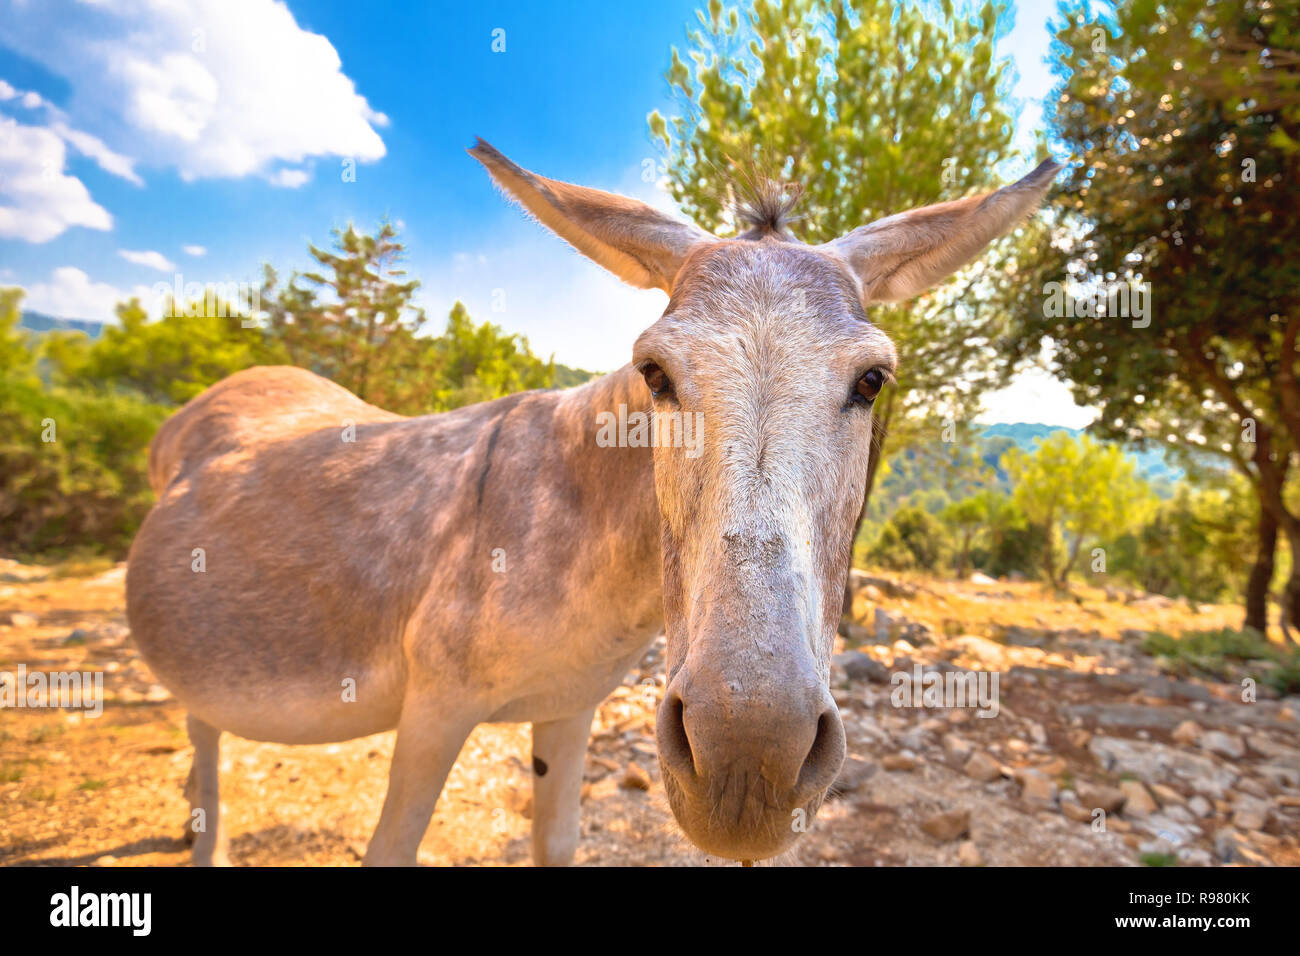 Dalmatinischen Insel Esel in der Natur, Tiere in freier Wildbahn, Kroatien Stockfoto